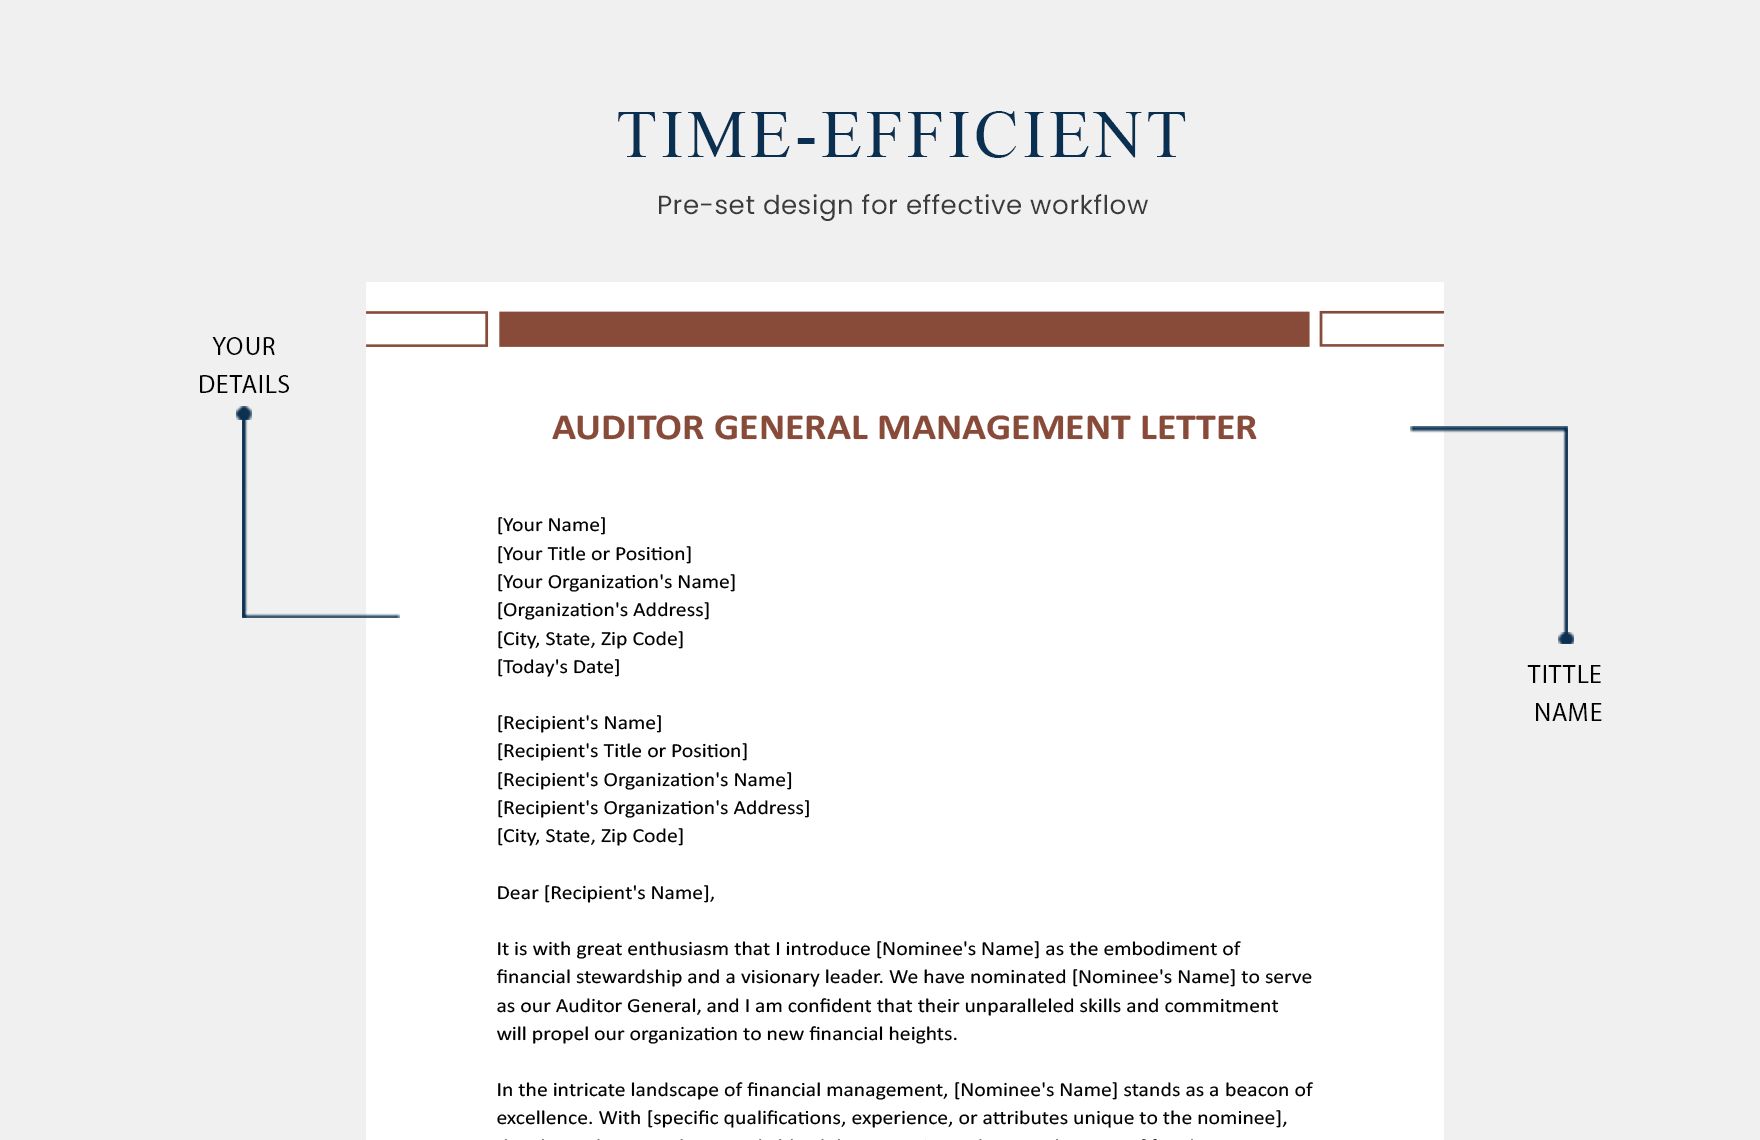 Auditor General Management Letter